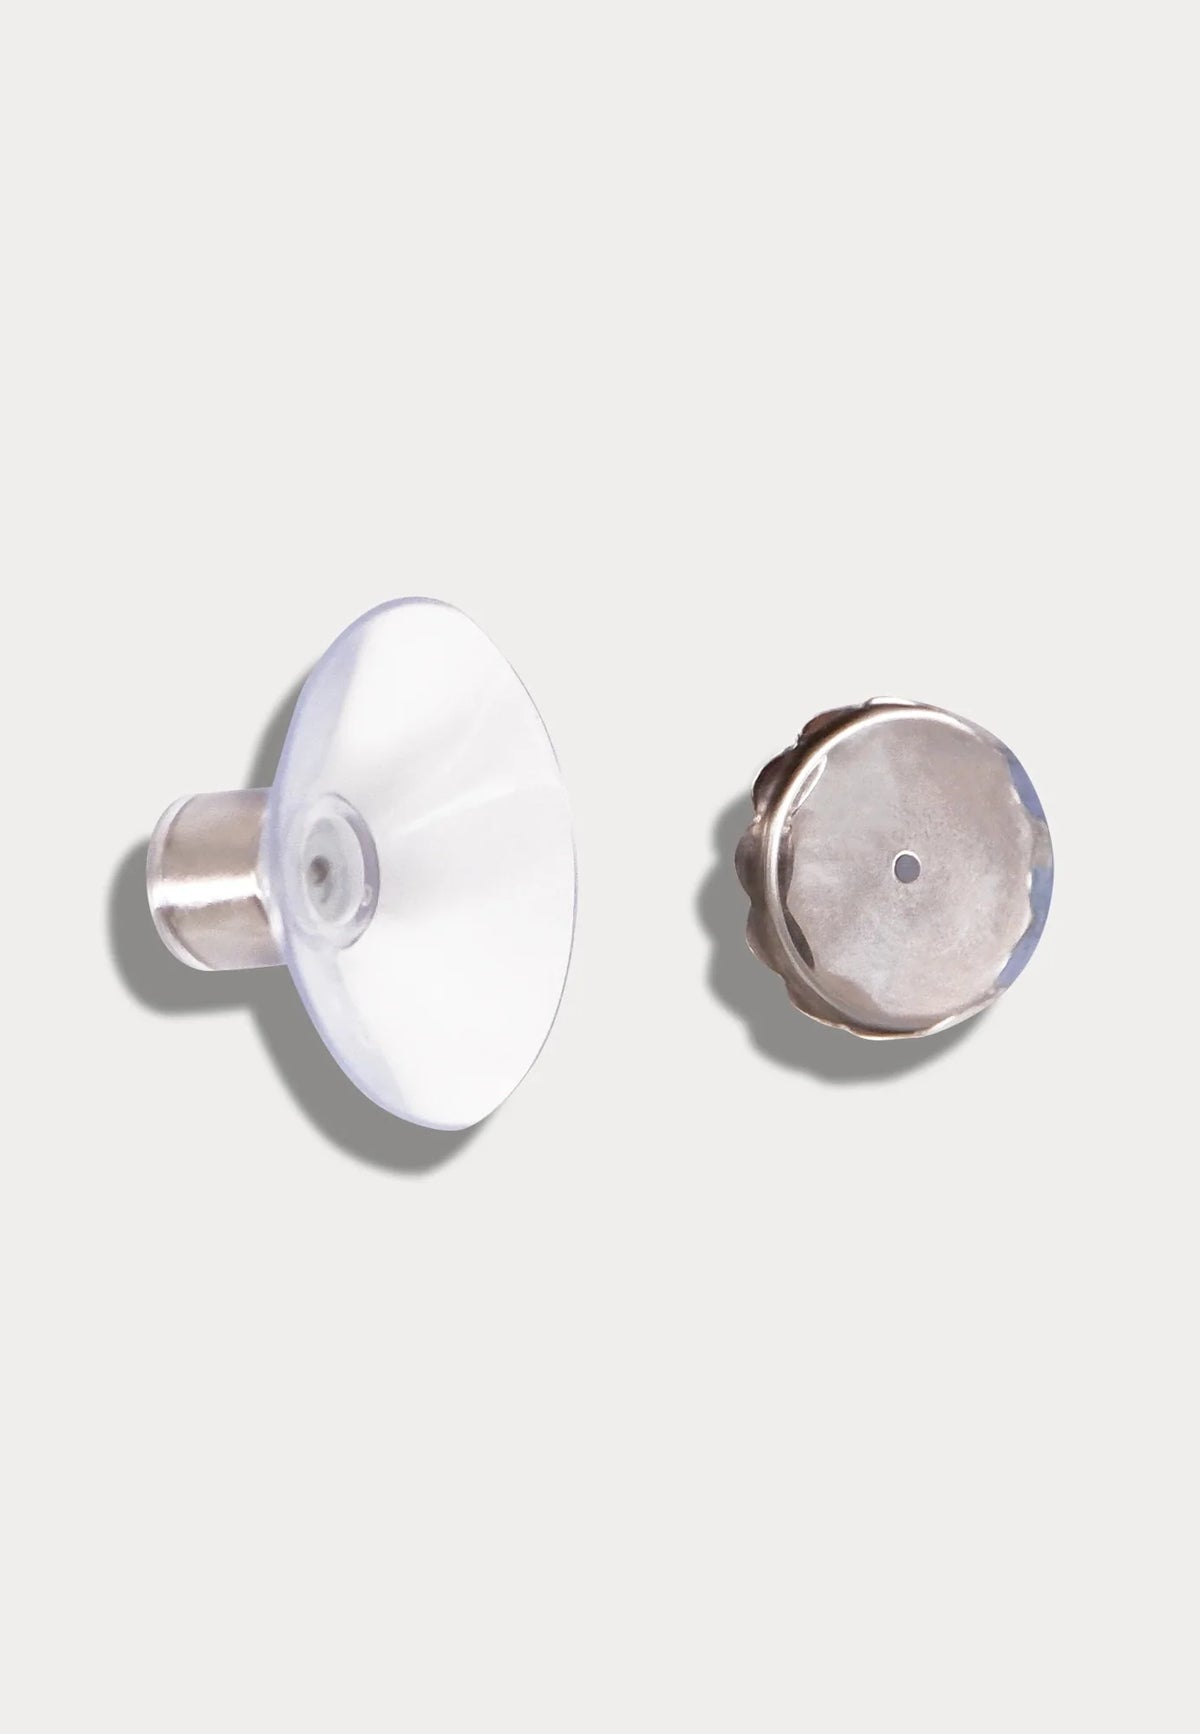 Magnetseifenhalter von plain b.  Der Halter ist perfekt geeignet um deine festen Seifen und Shampoos im Badezimmer aufzubewahren.